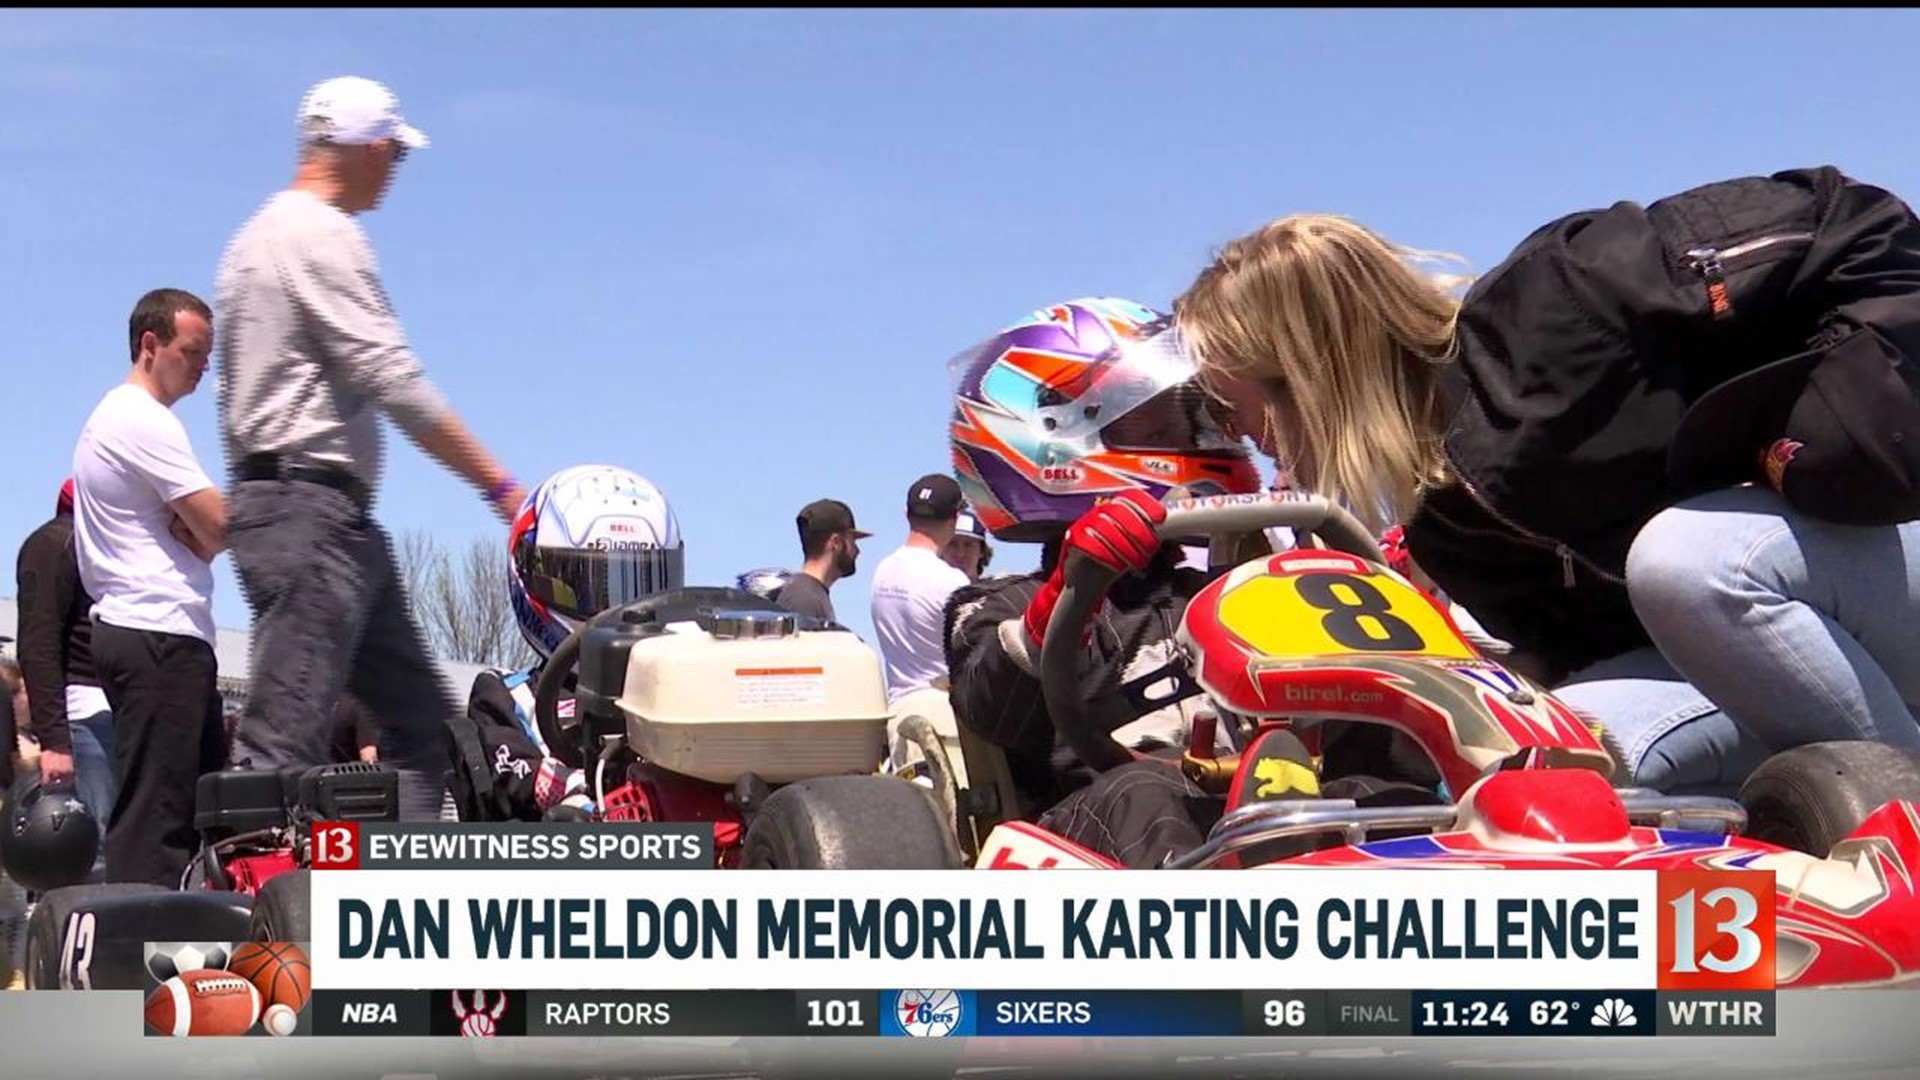 Dan Wheldon Memorial Karting Challenge